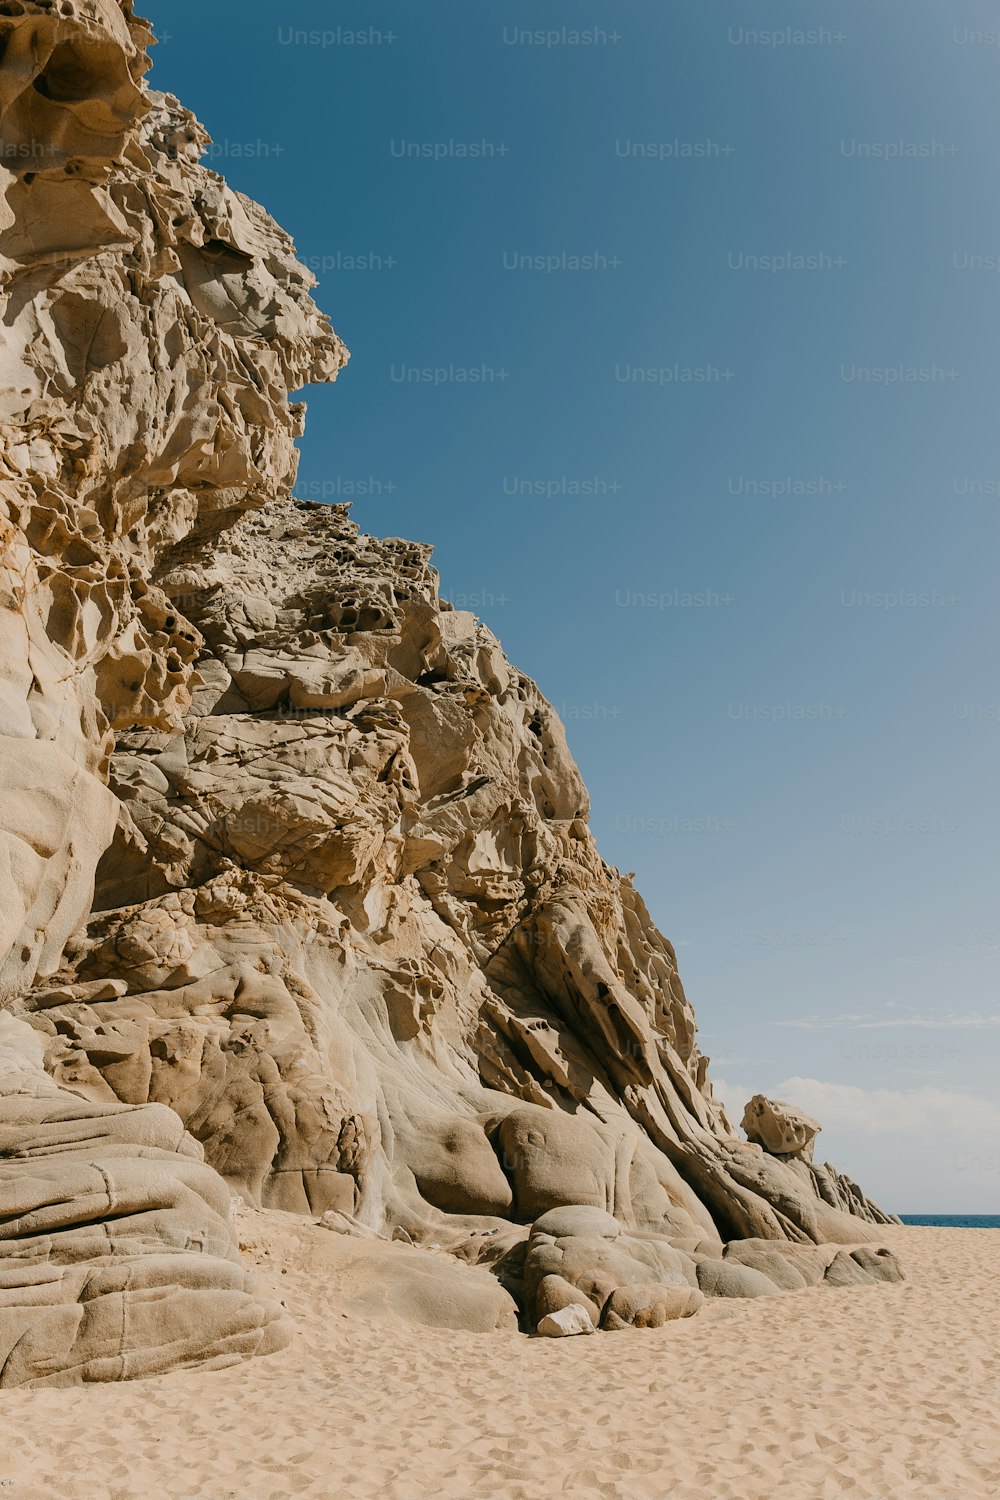 그 위에 큰 암석이 있는 모래 해변